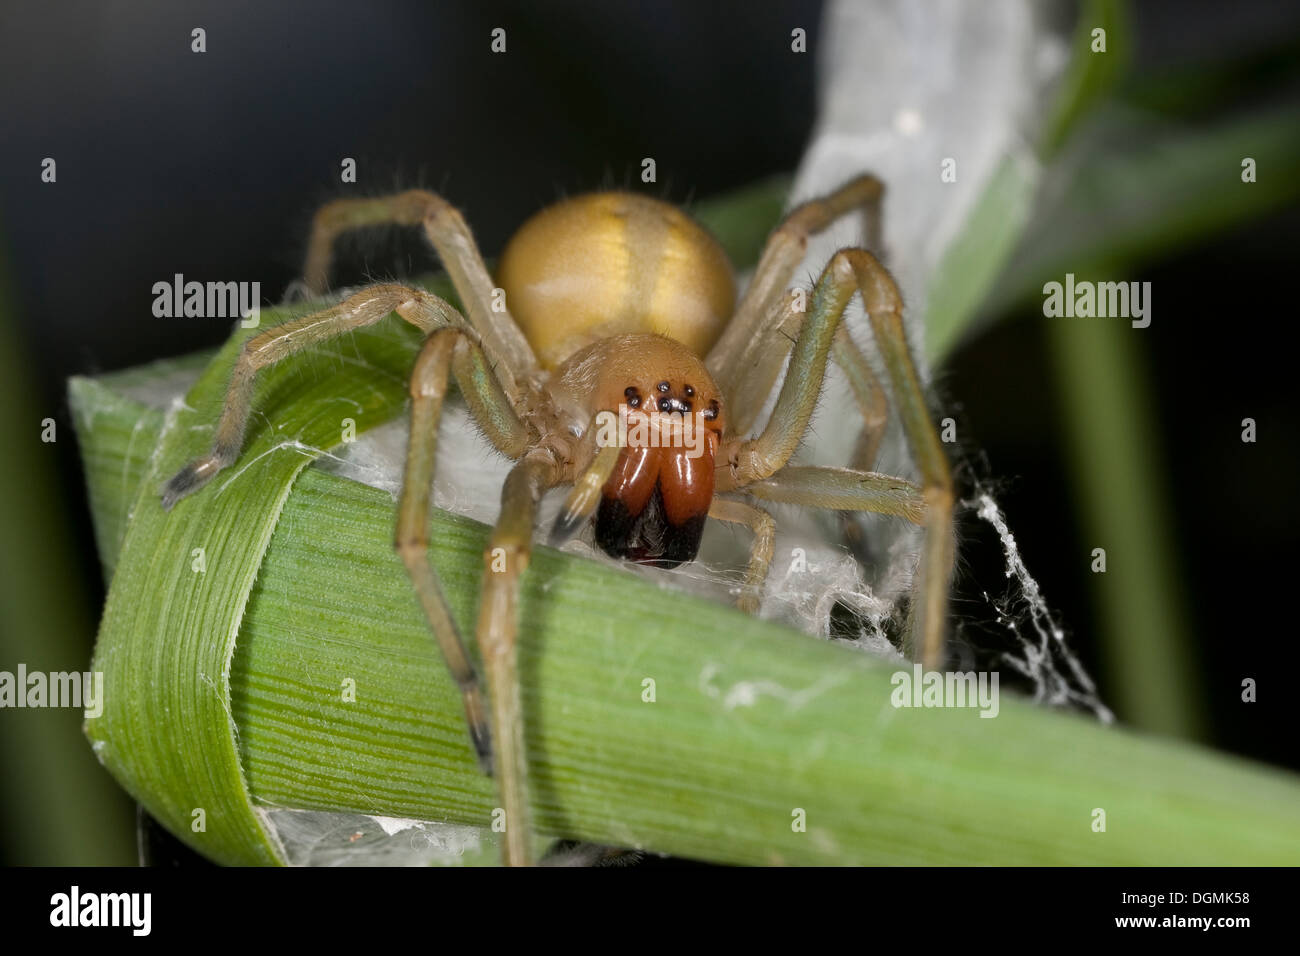 Yellow sack spider, Dornfinger, Ammen-Dornfinger, Dornfinger-Spinne, Cheiracanthium punctorium, Clubionidae, Giftspinne Stock Photo